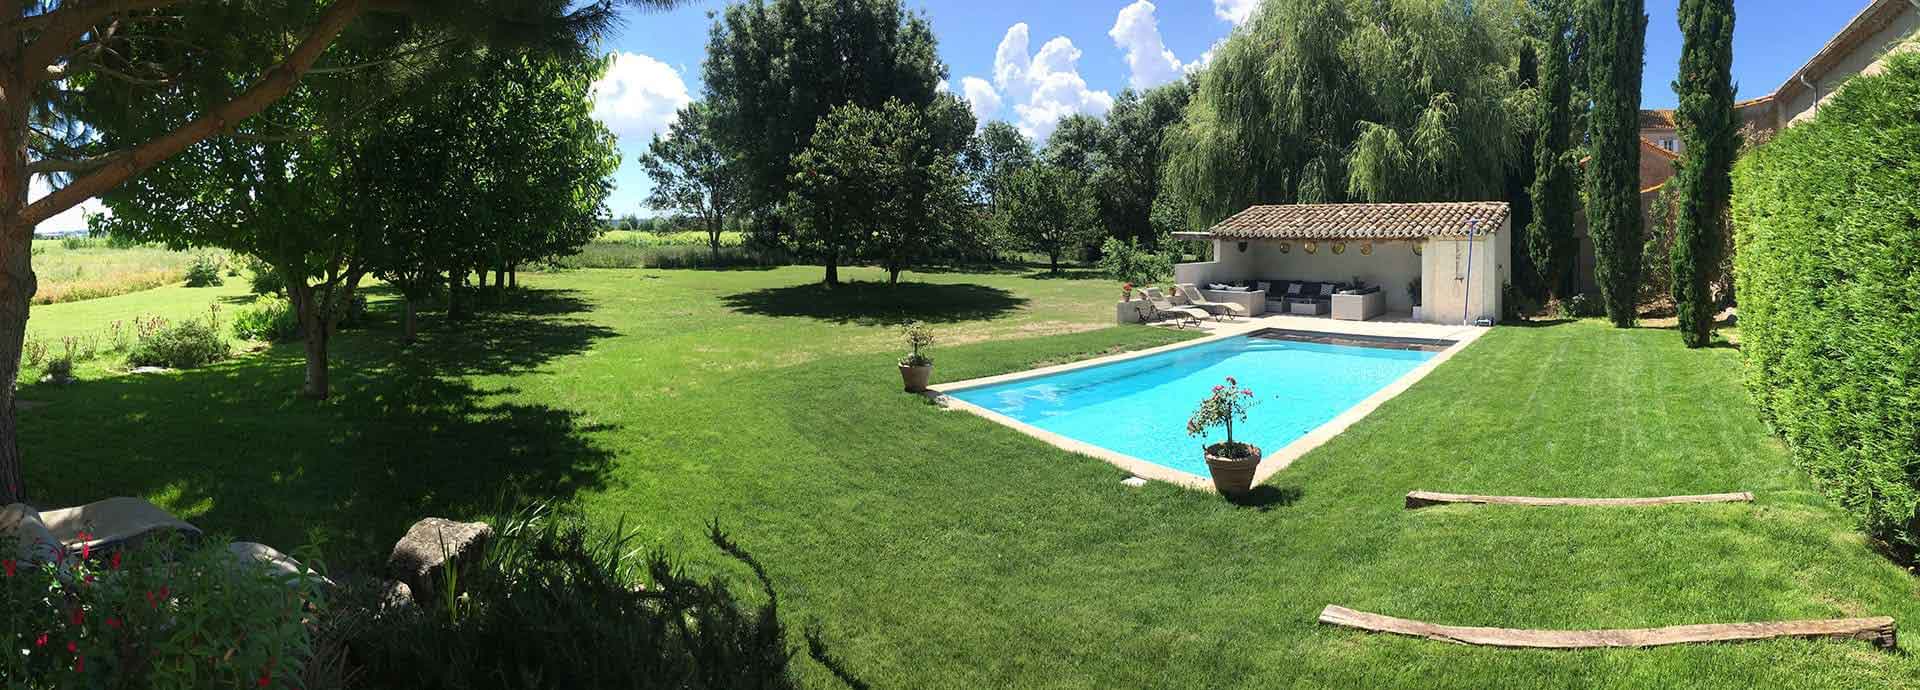 Der Pool und der Park,  Domaine  la Vernède